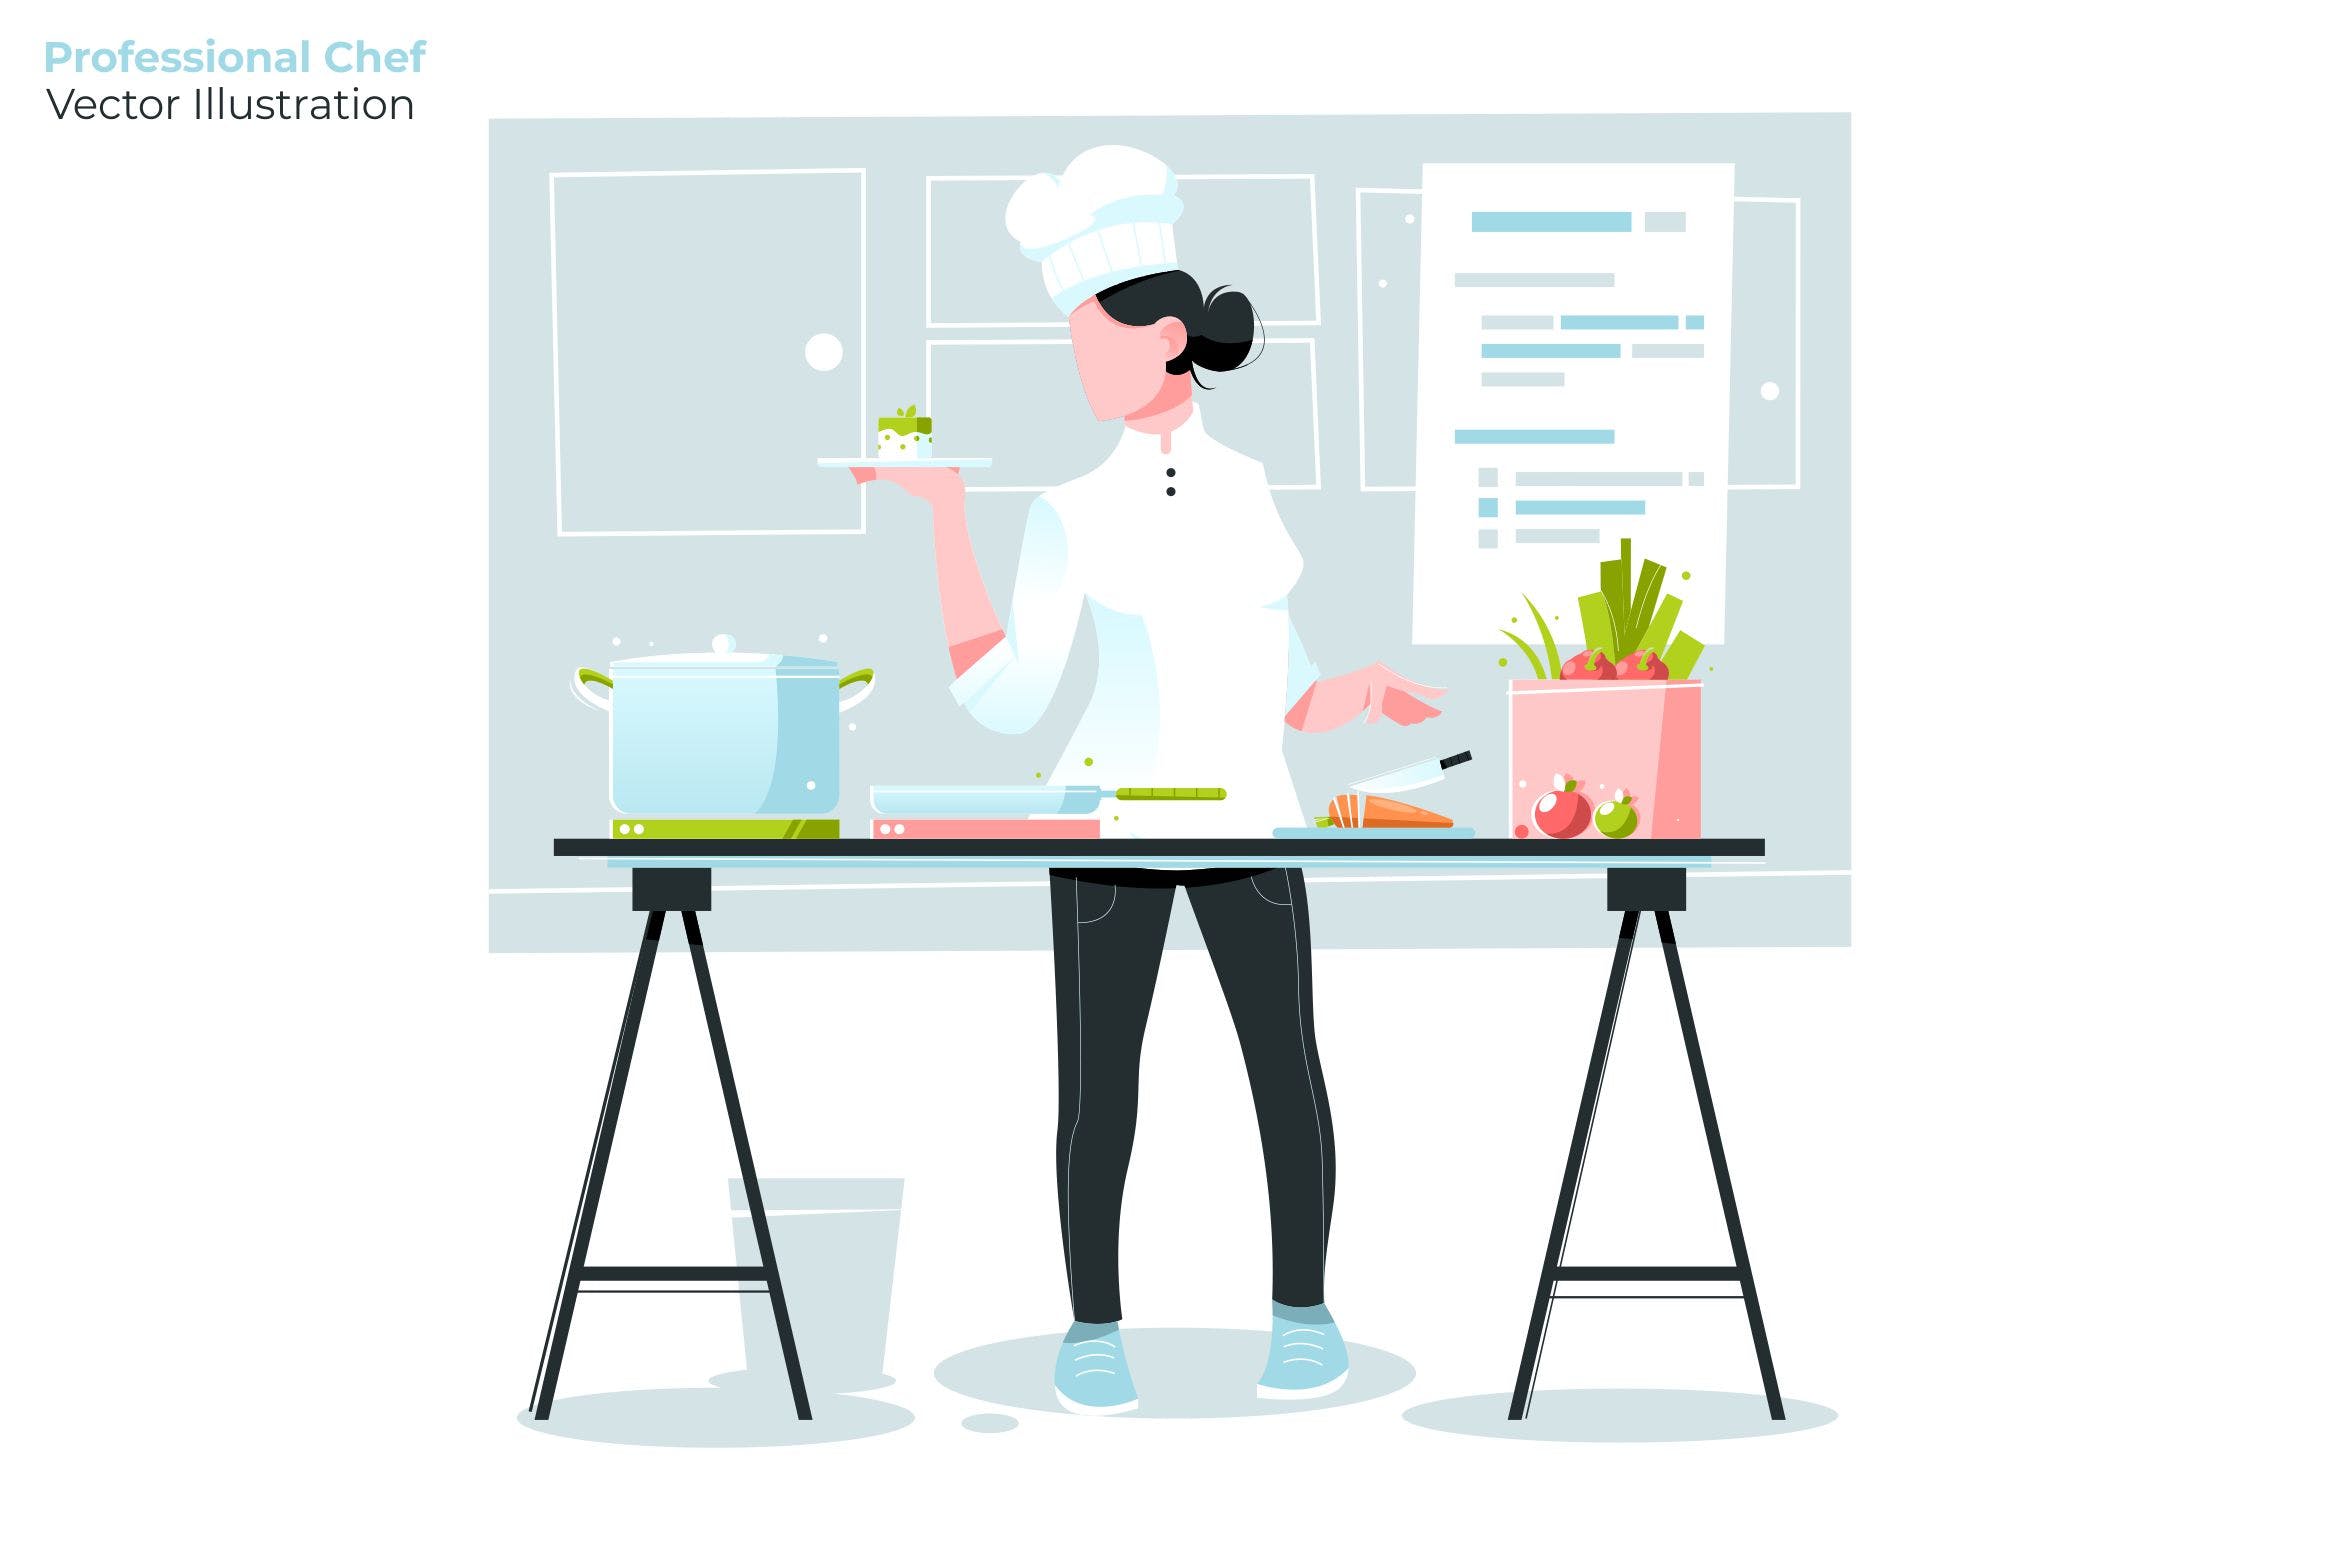 西式厨师烹饪场景矢量插画素材 Professional Chef – Vector Illustration插图